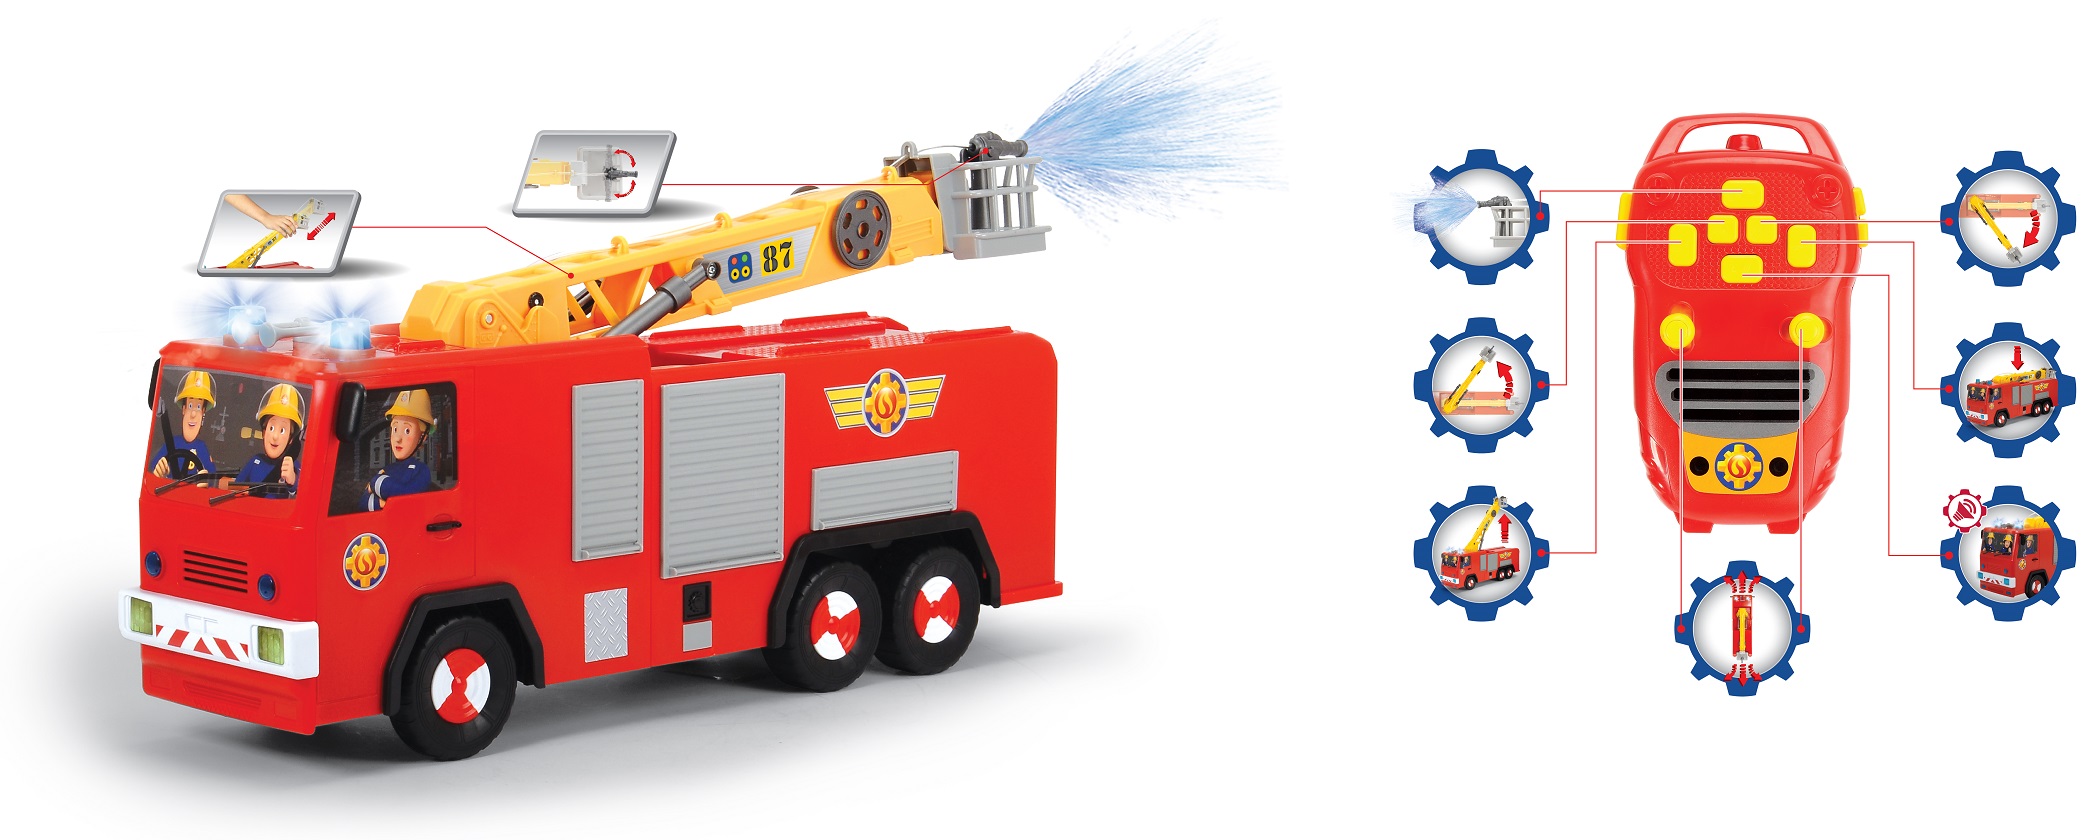 Машинка на д/у - Пожарный Сэм - Пожарная машина Юпитер со светом и звуком, 62 см  